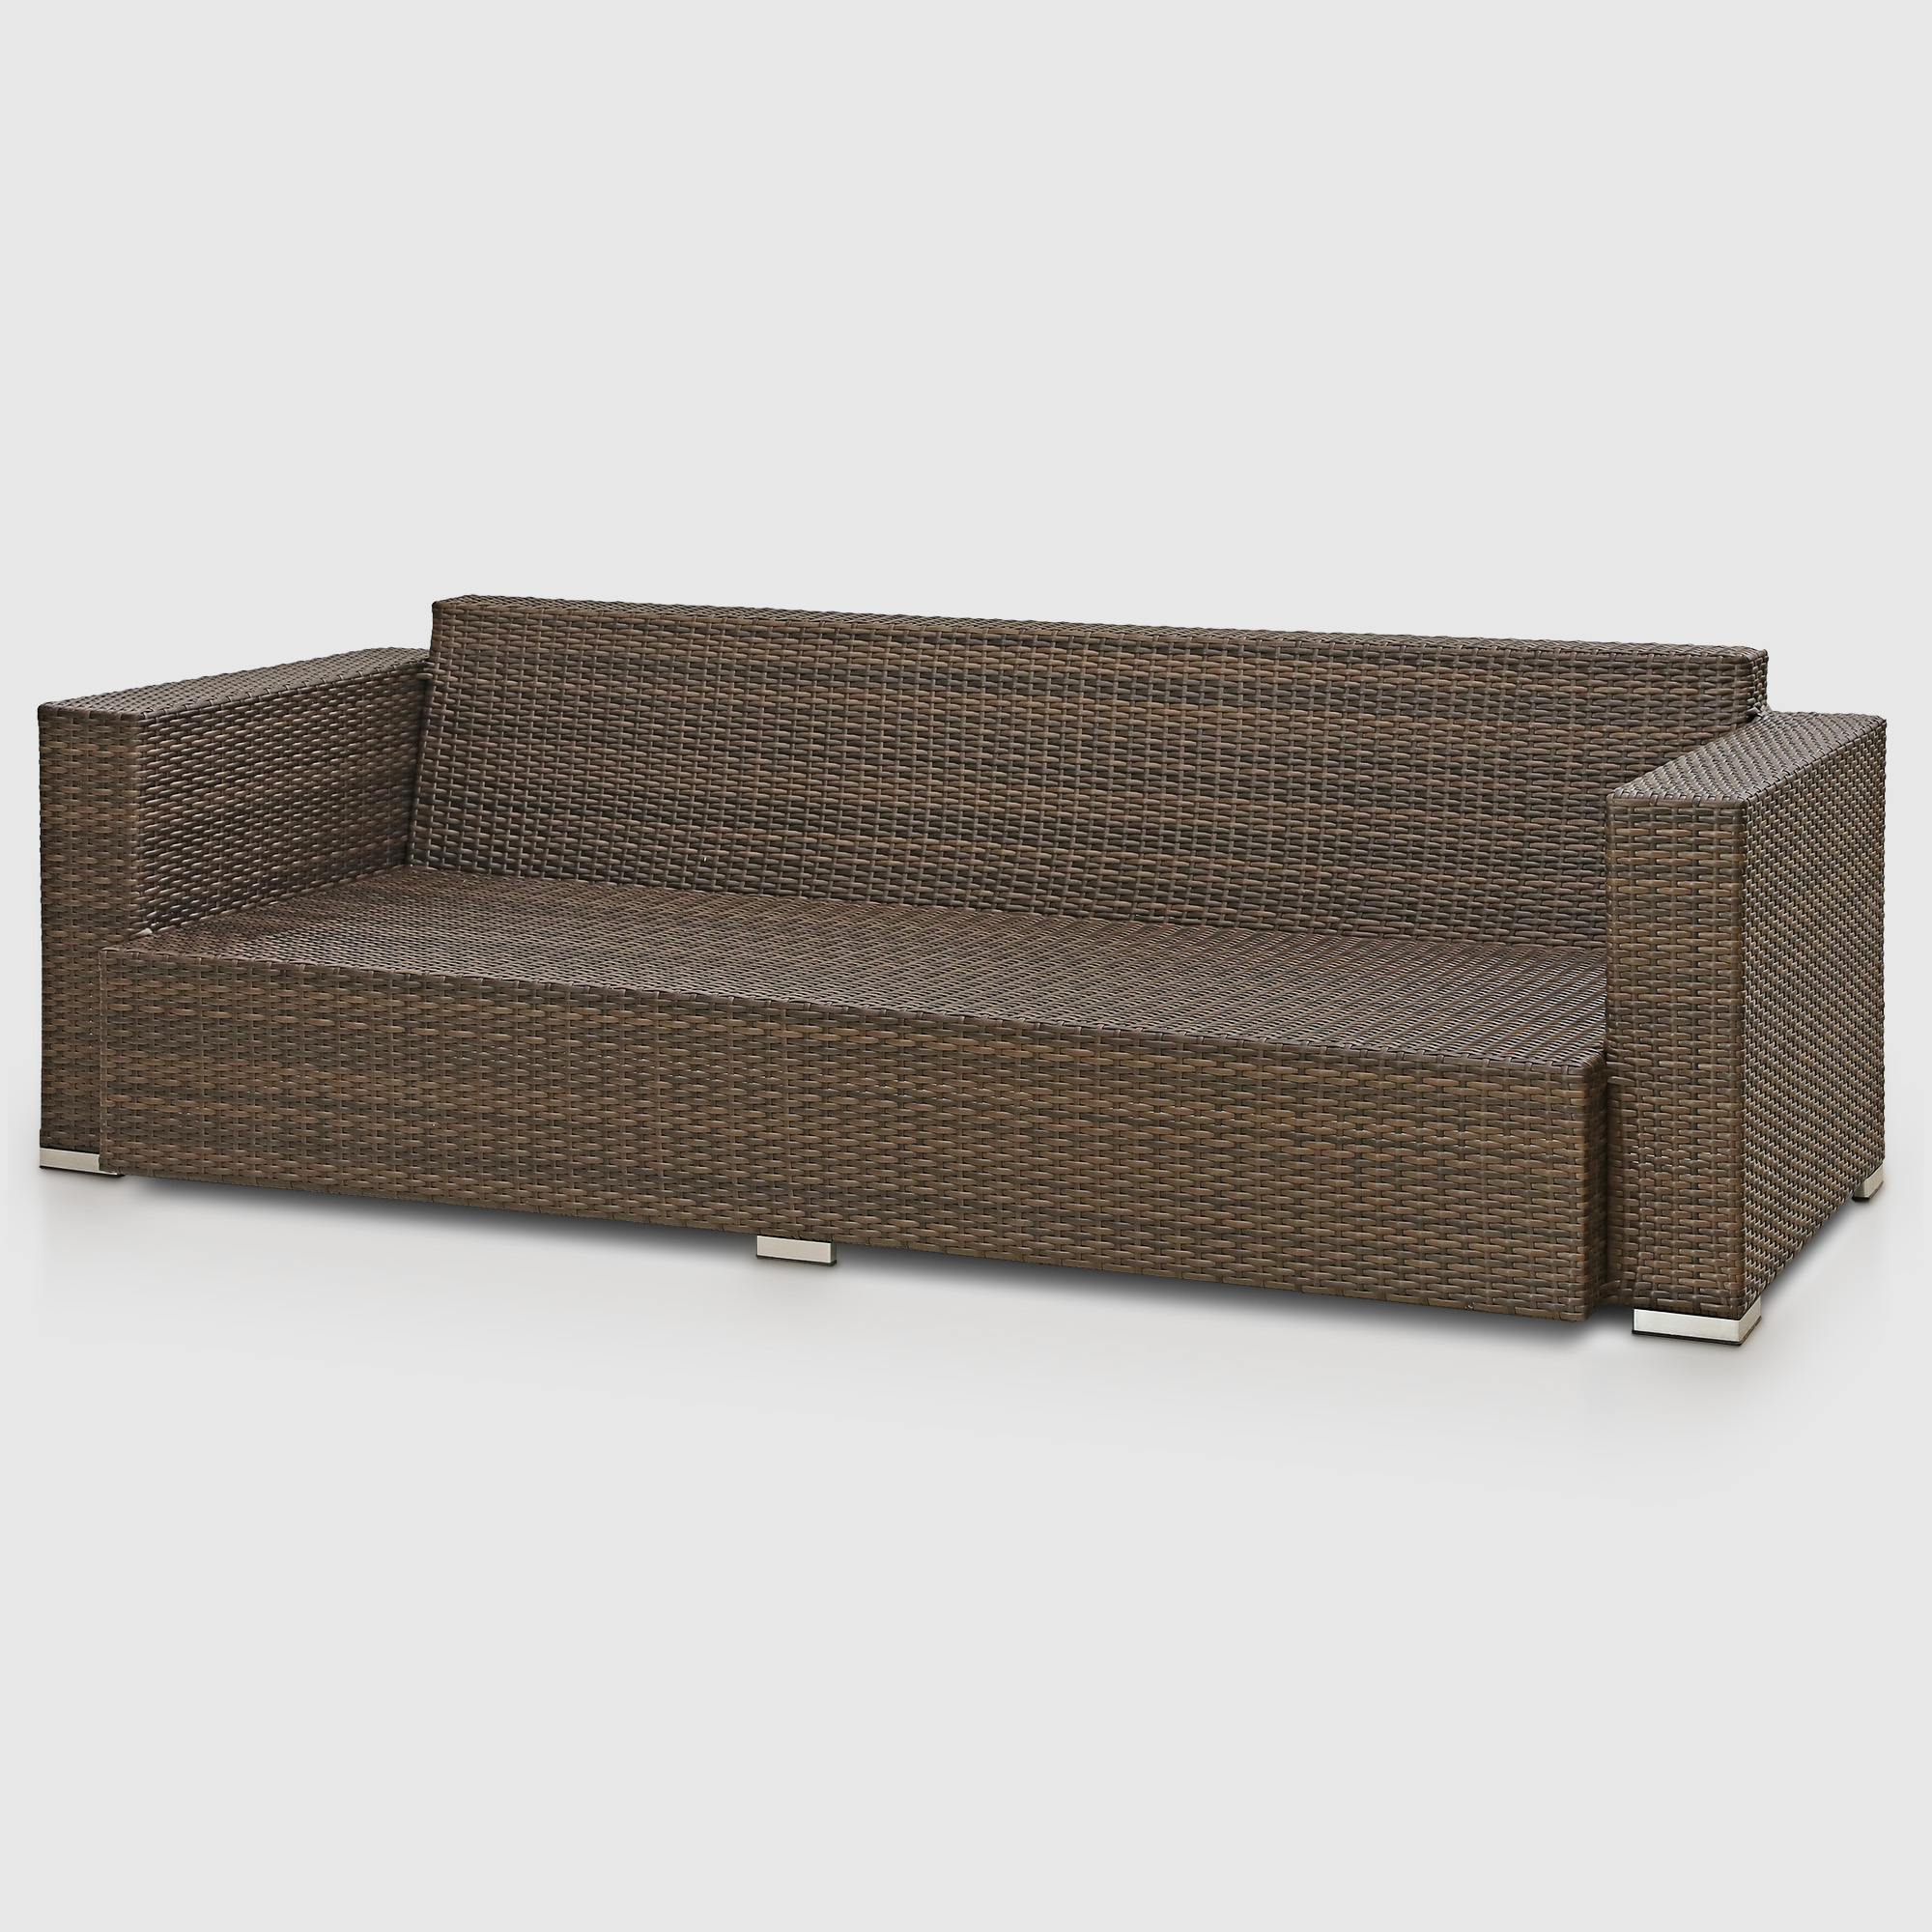 Комплект мебели Ns Rattan Cleo коричнево-бежевый 7 предметов, цвет коричневый, размер 199х68х72 - фото 5